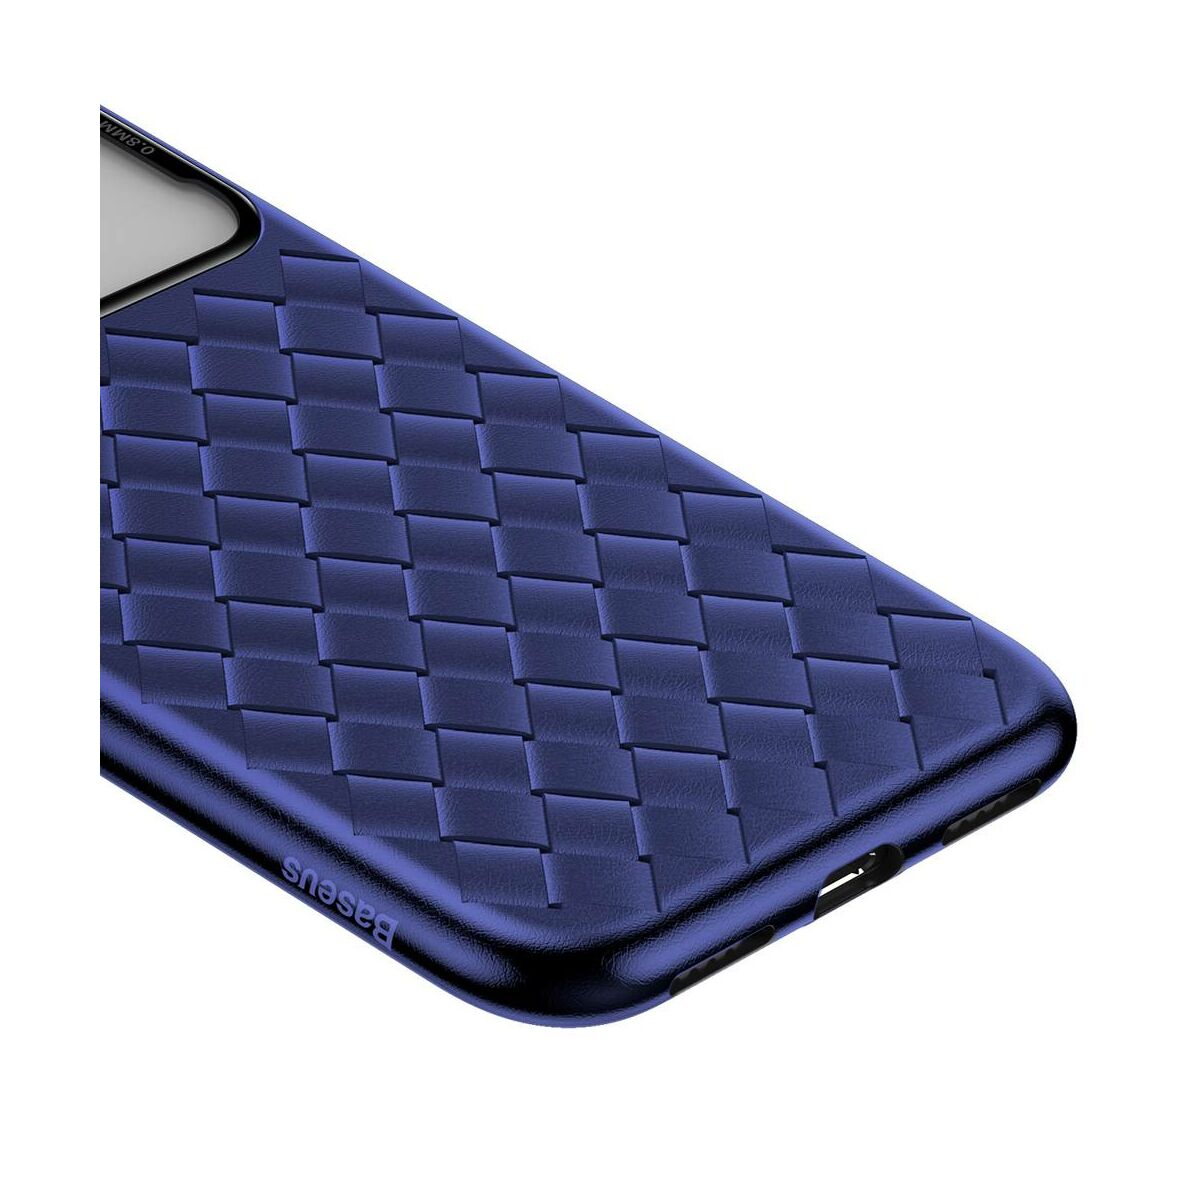 Kép 3/10 - Baseus iPhone XS Max üveg & tok, BV Weaving, kék (WIAPIPH65-BL03)